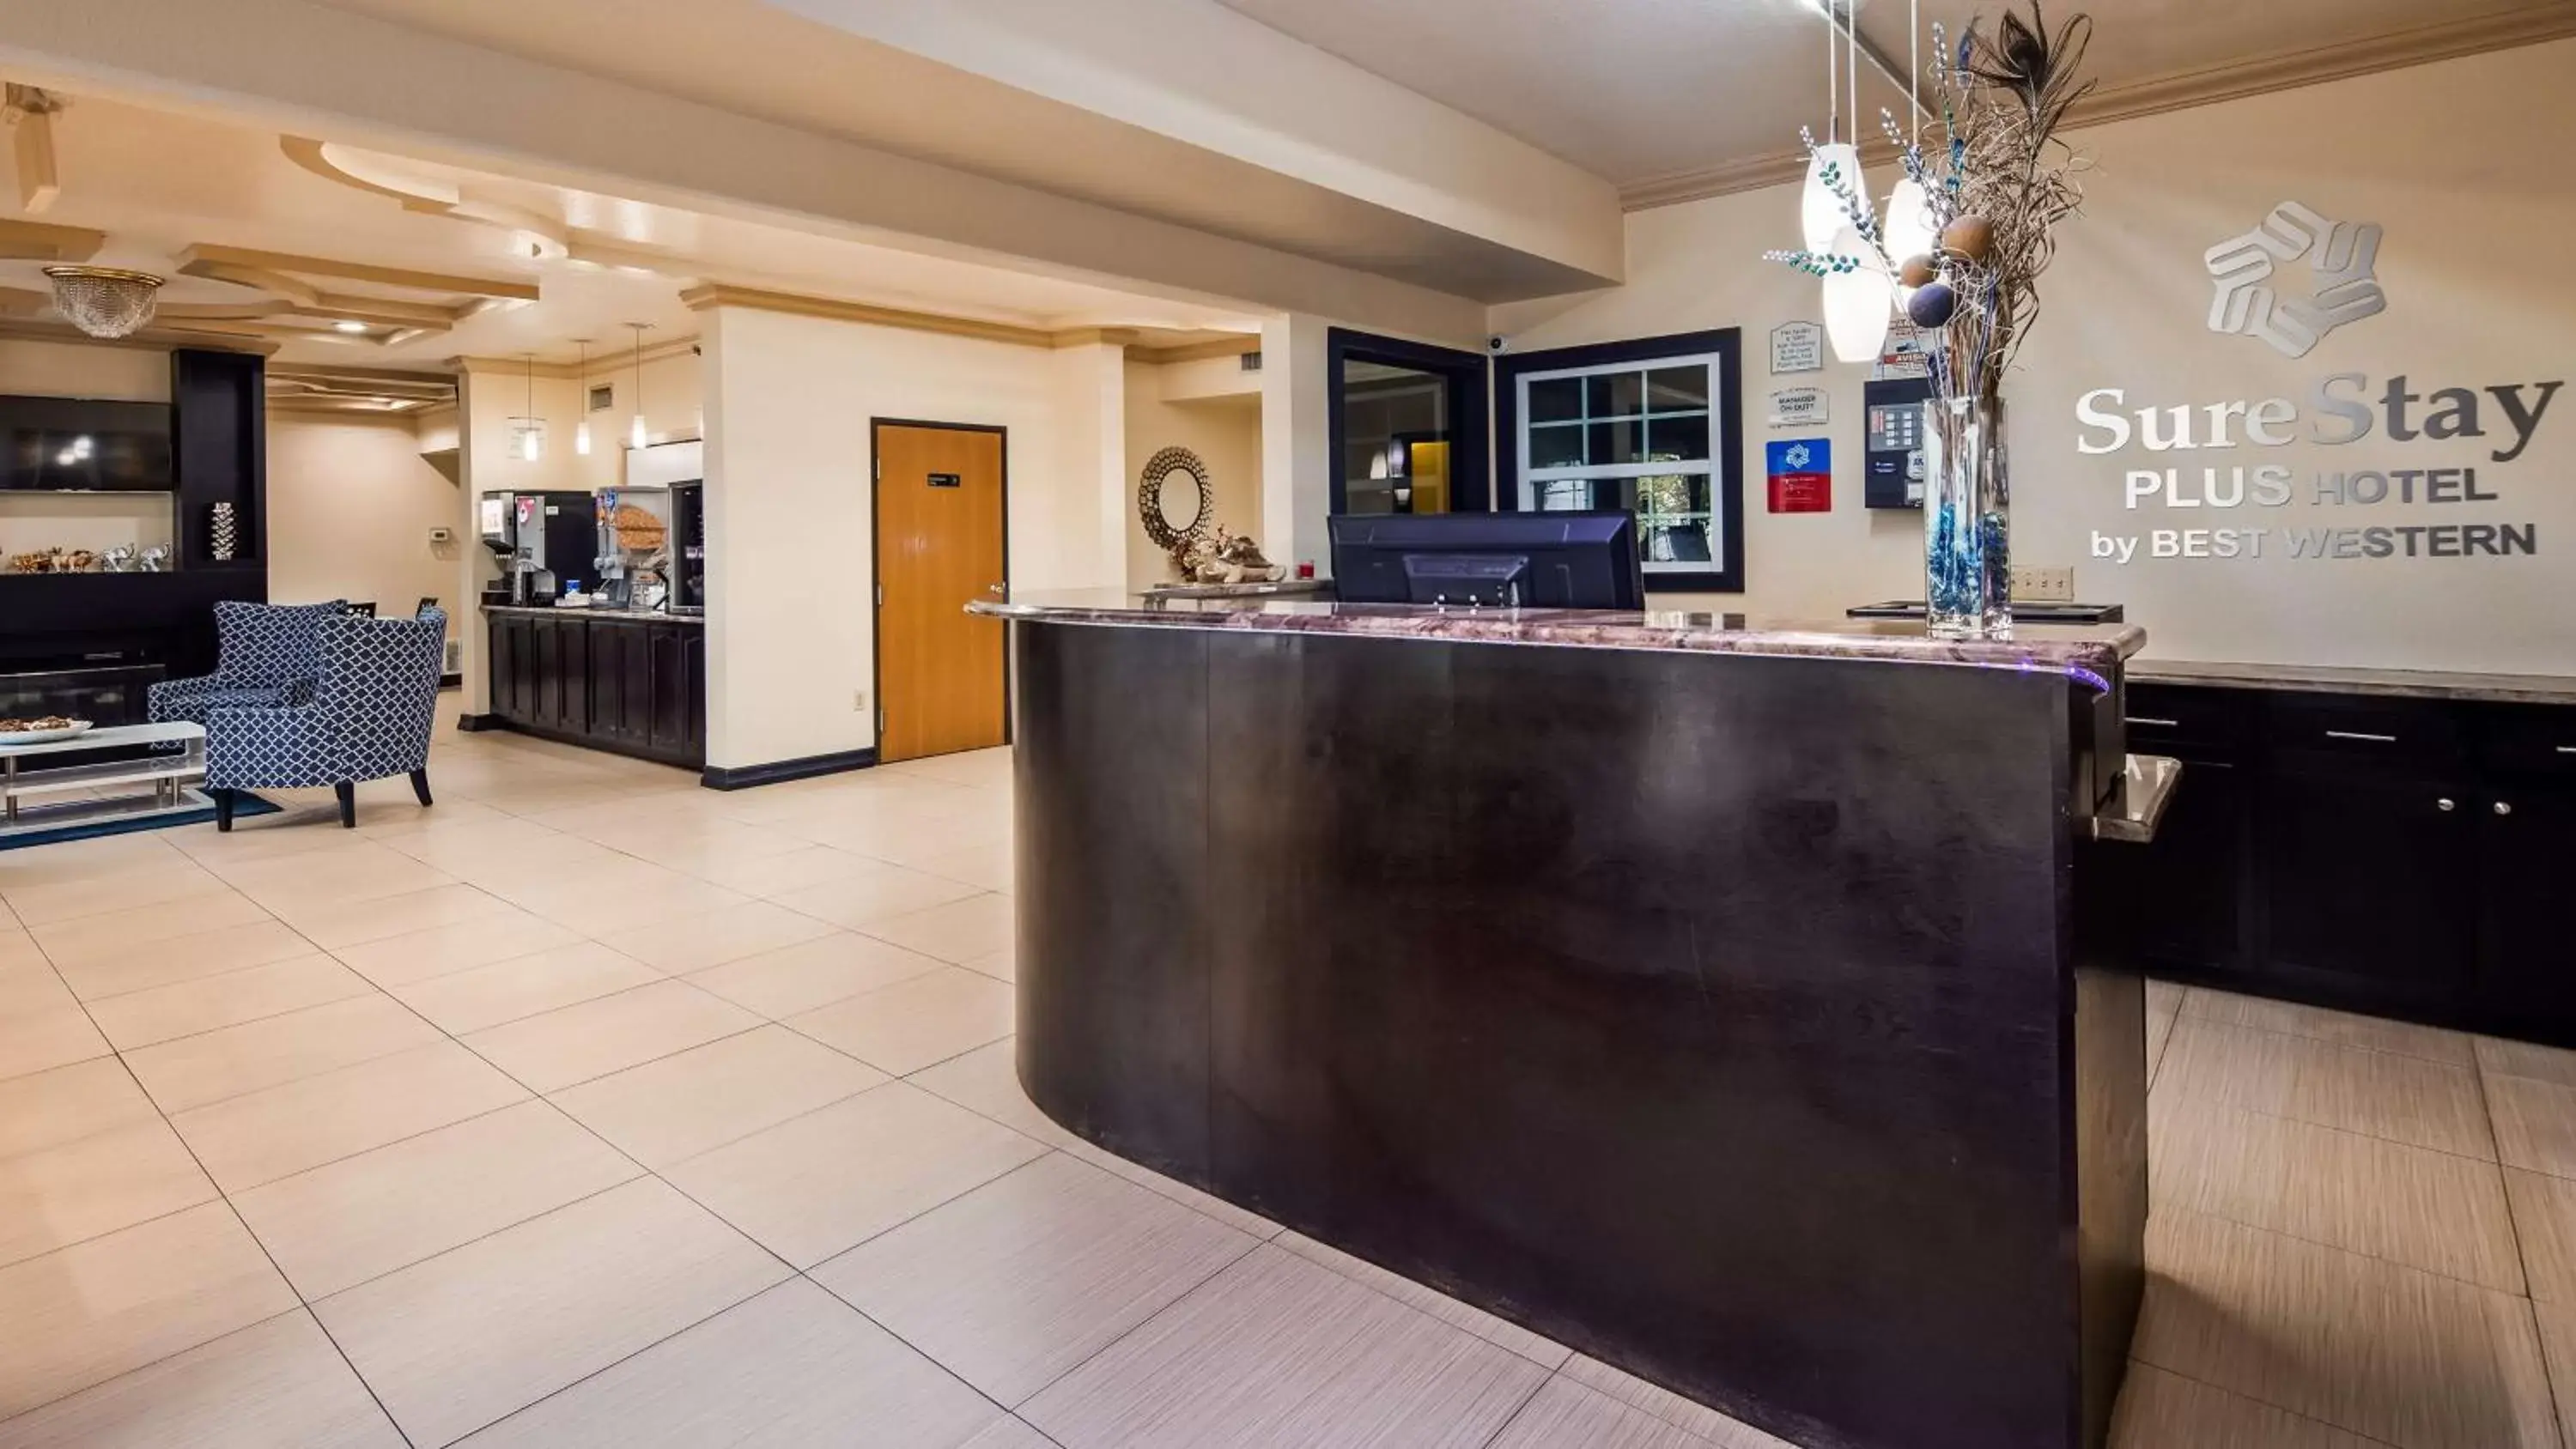 Lobby or reception, Lobby/Reception in SureStay Plus Hotel By Best Western San Antonio North 281 N